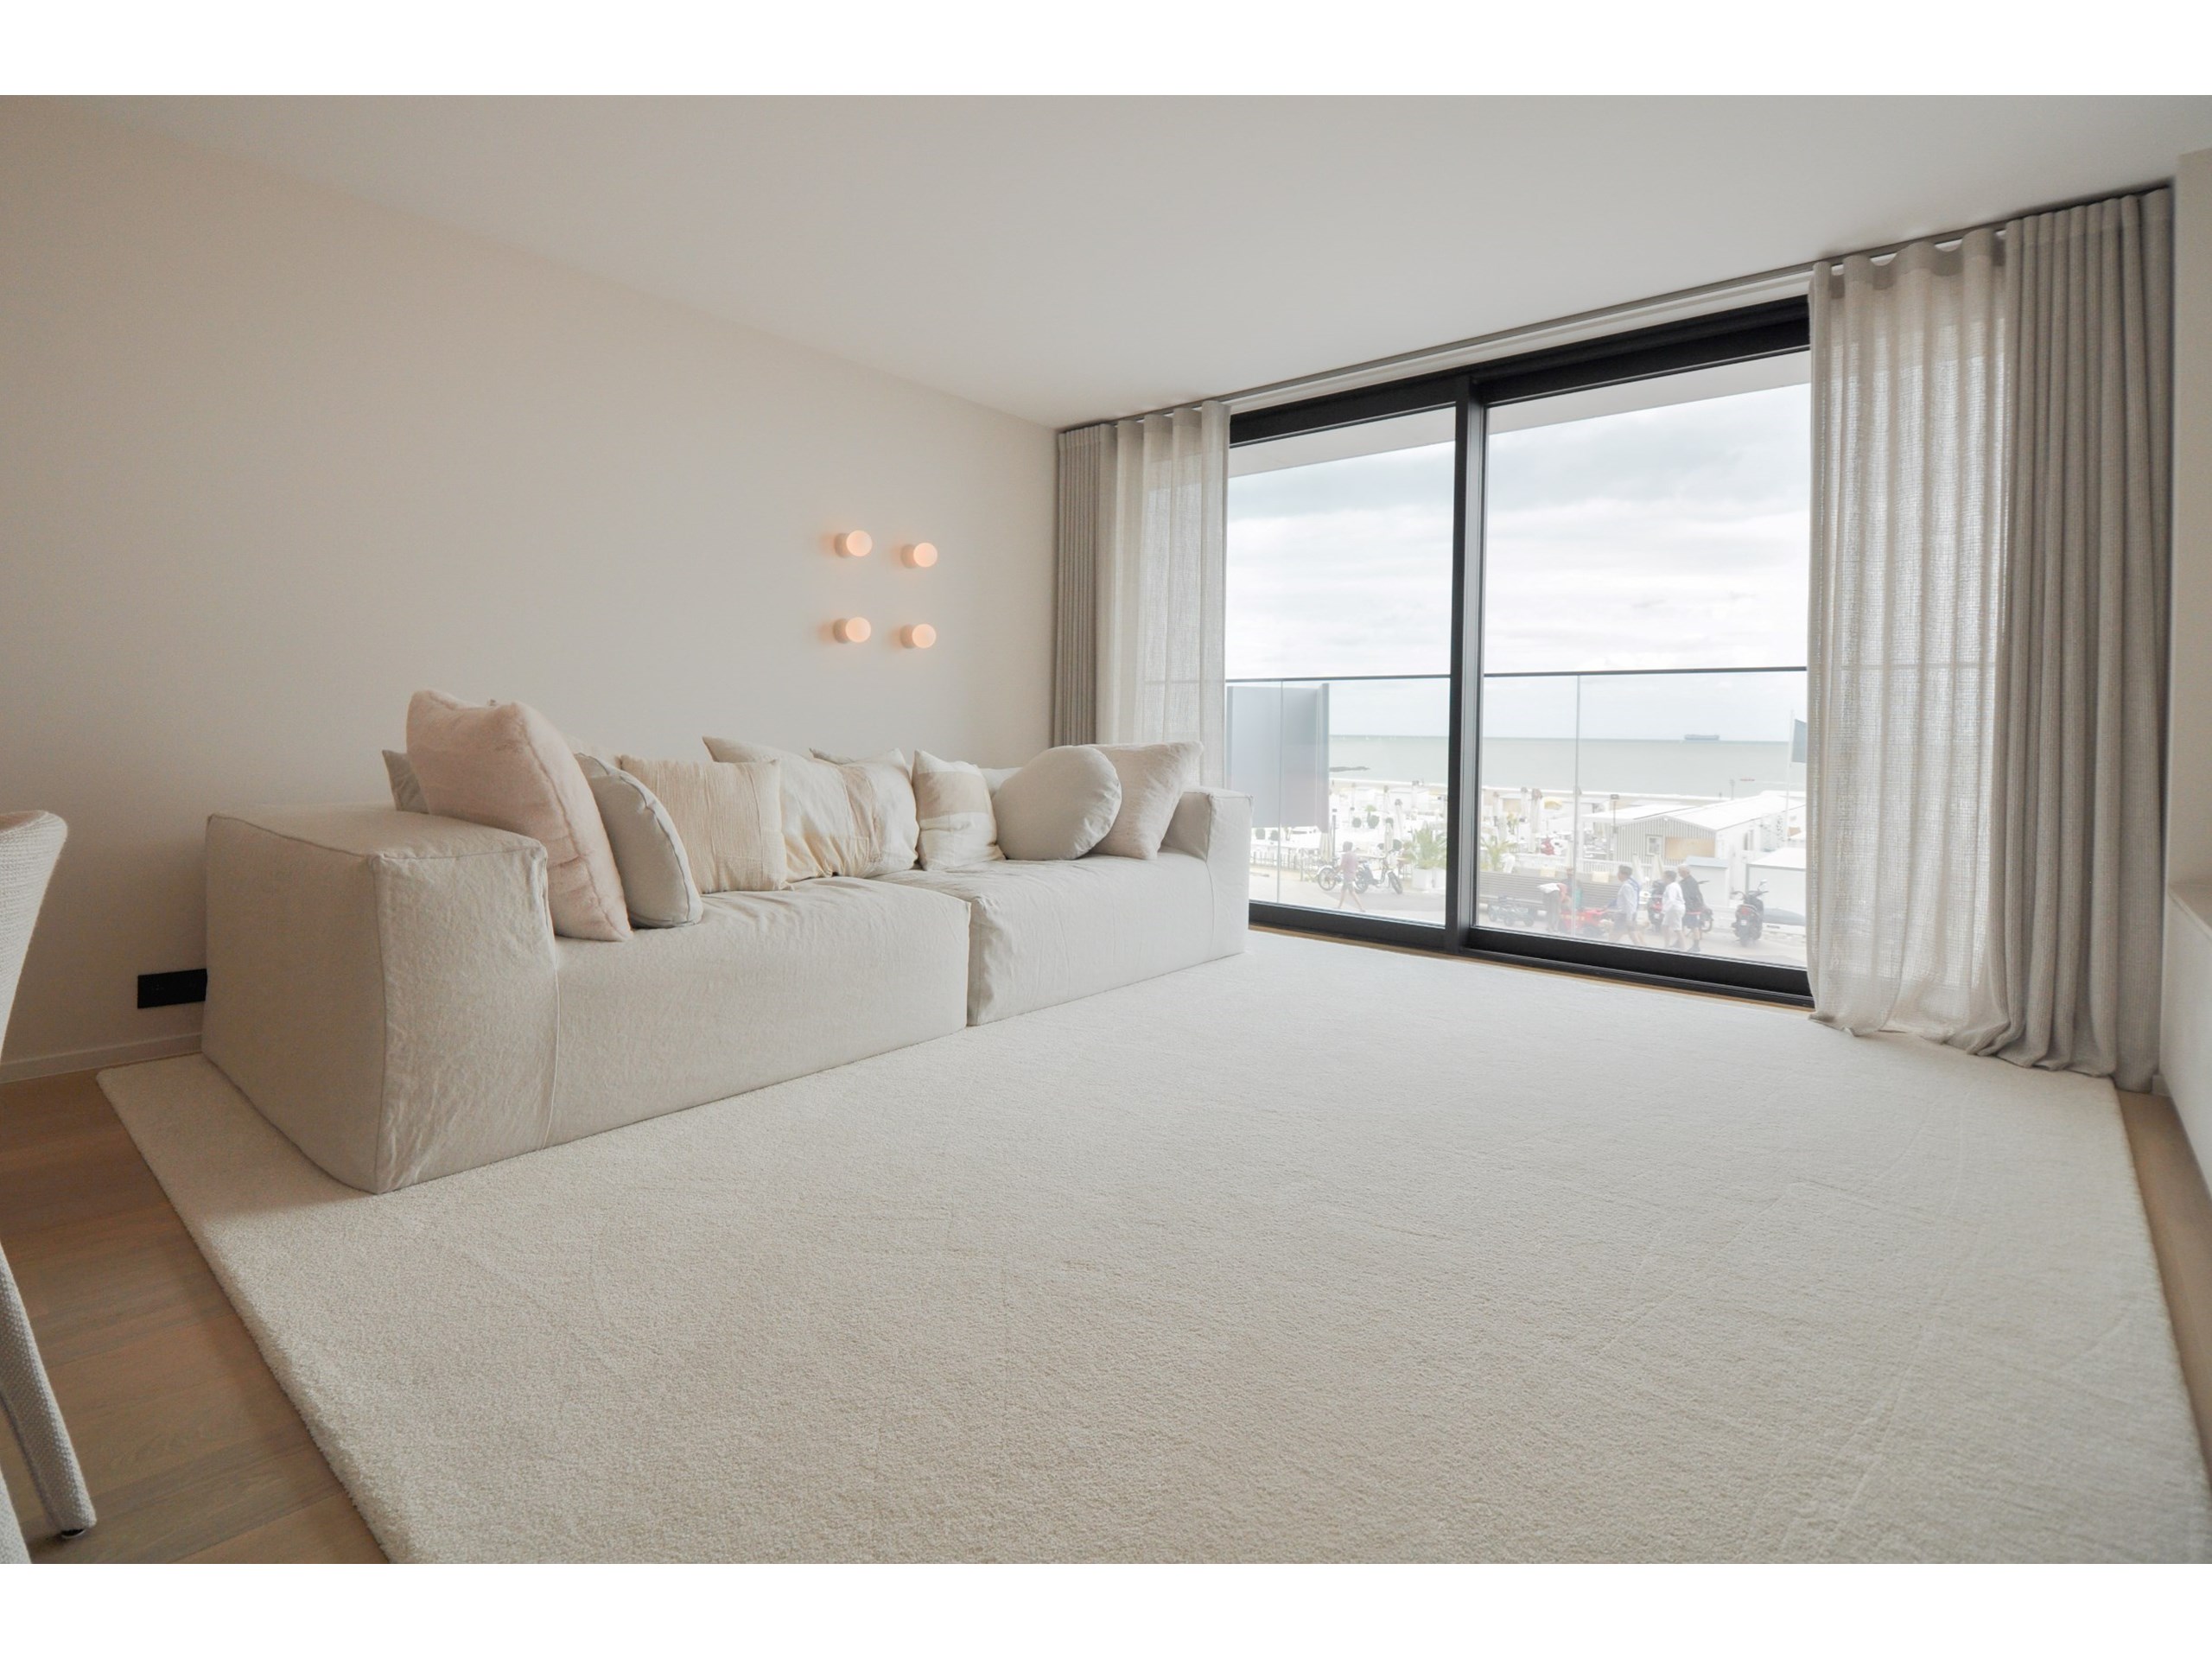 Subliem appartement met frontaal zeezicht afgewerkt met zeer kwalitatieve materialen. 